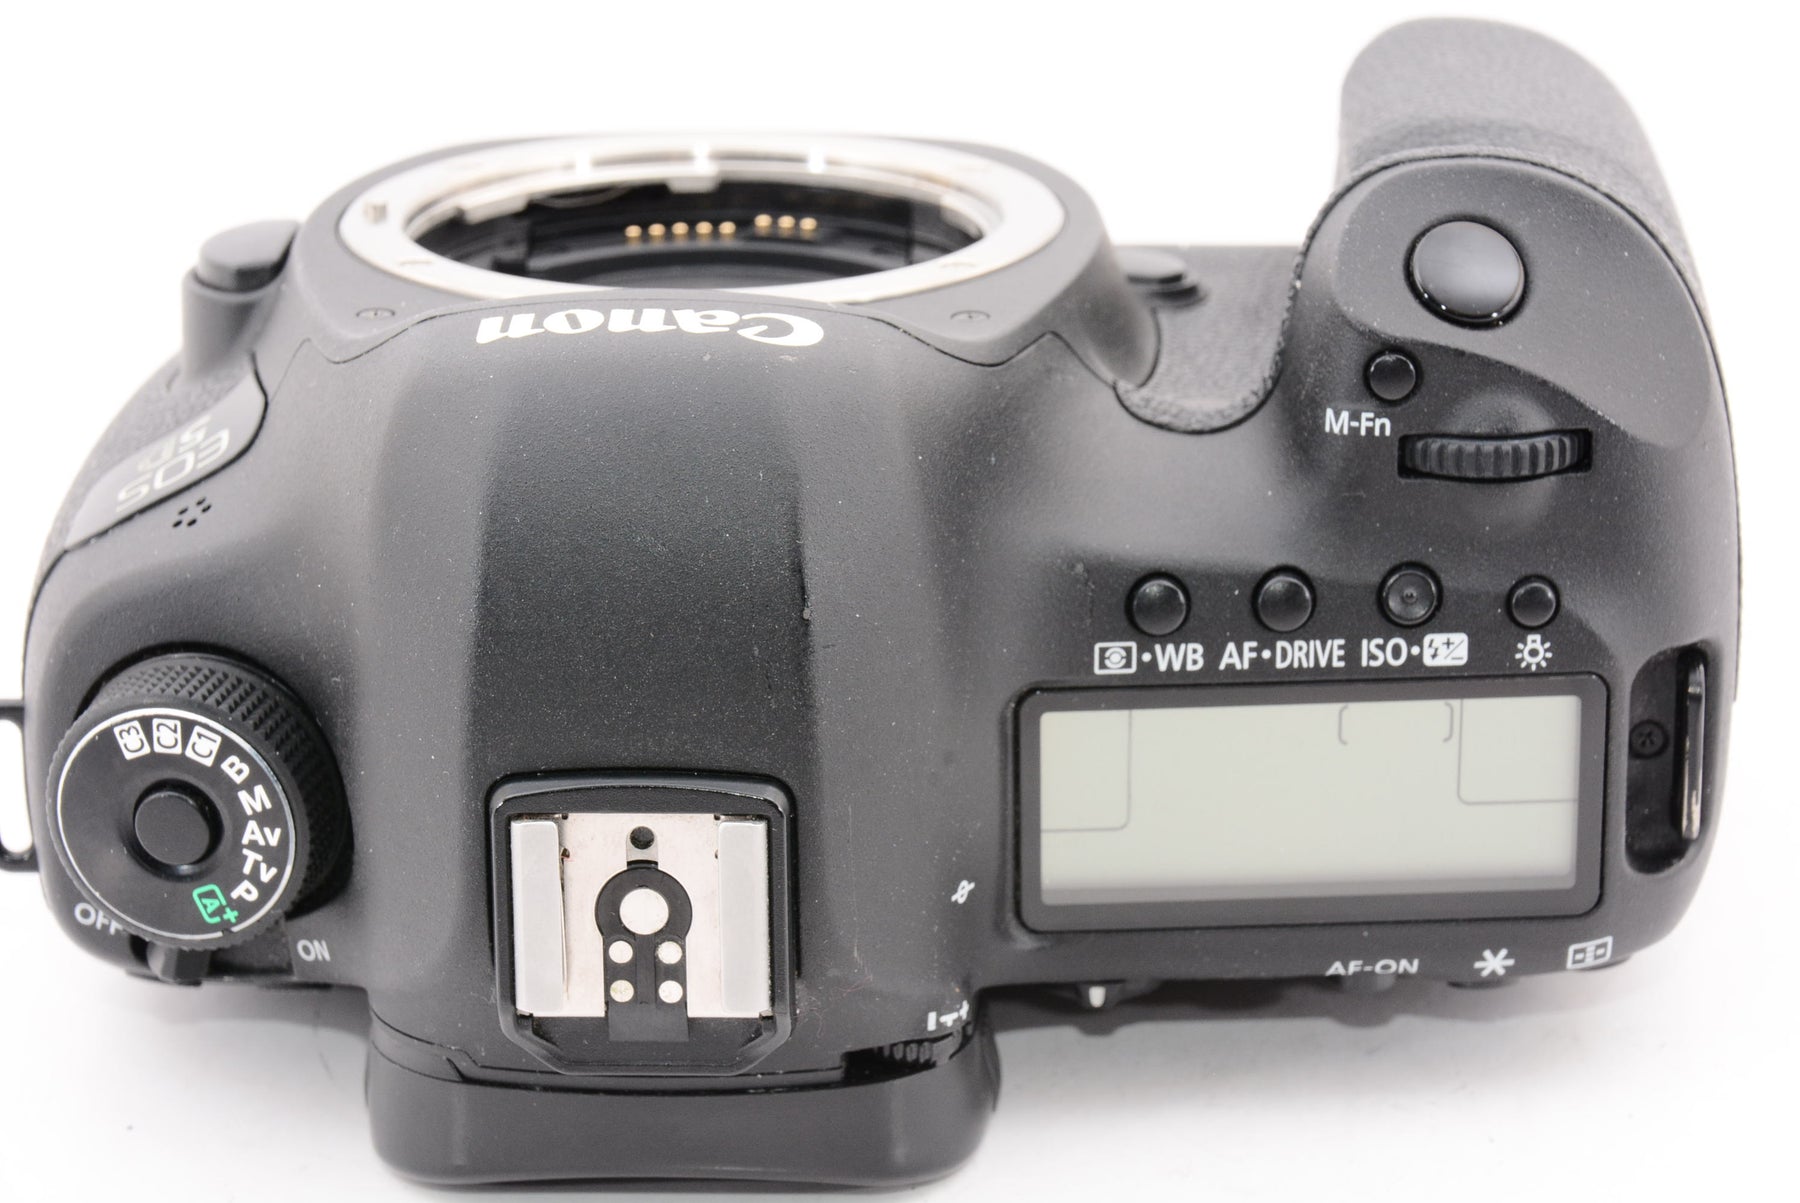 Canon デジタル一眼レフカメラ EOS 5D Mark III ボディ EOS5DMK3 - 1